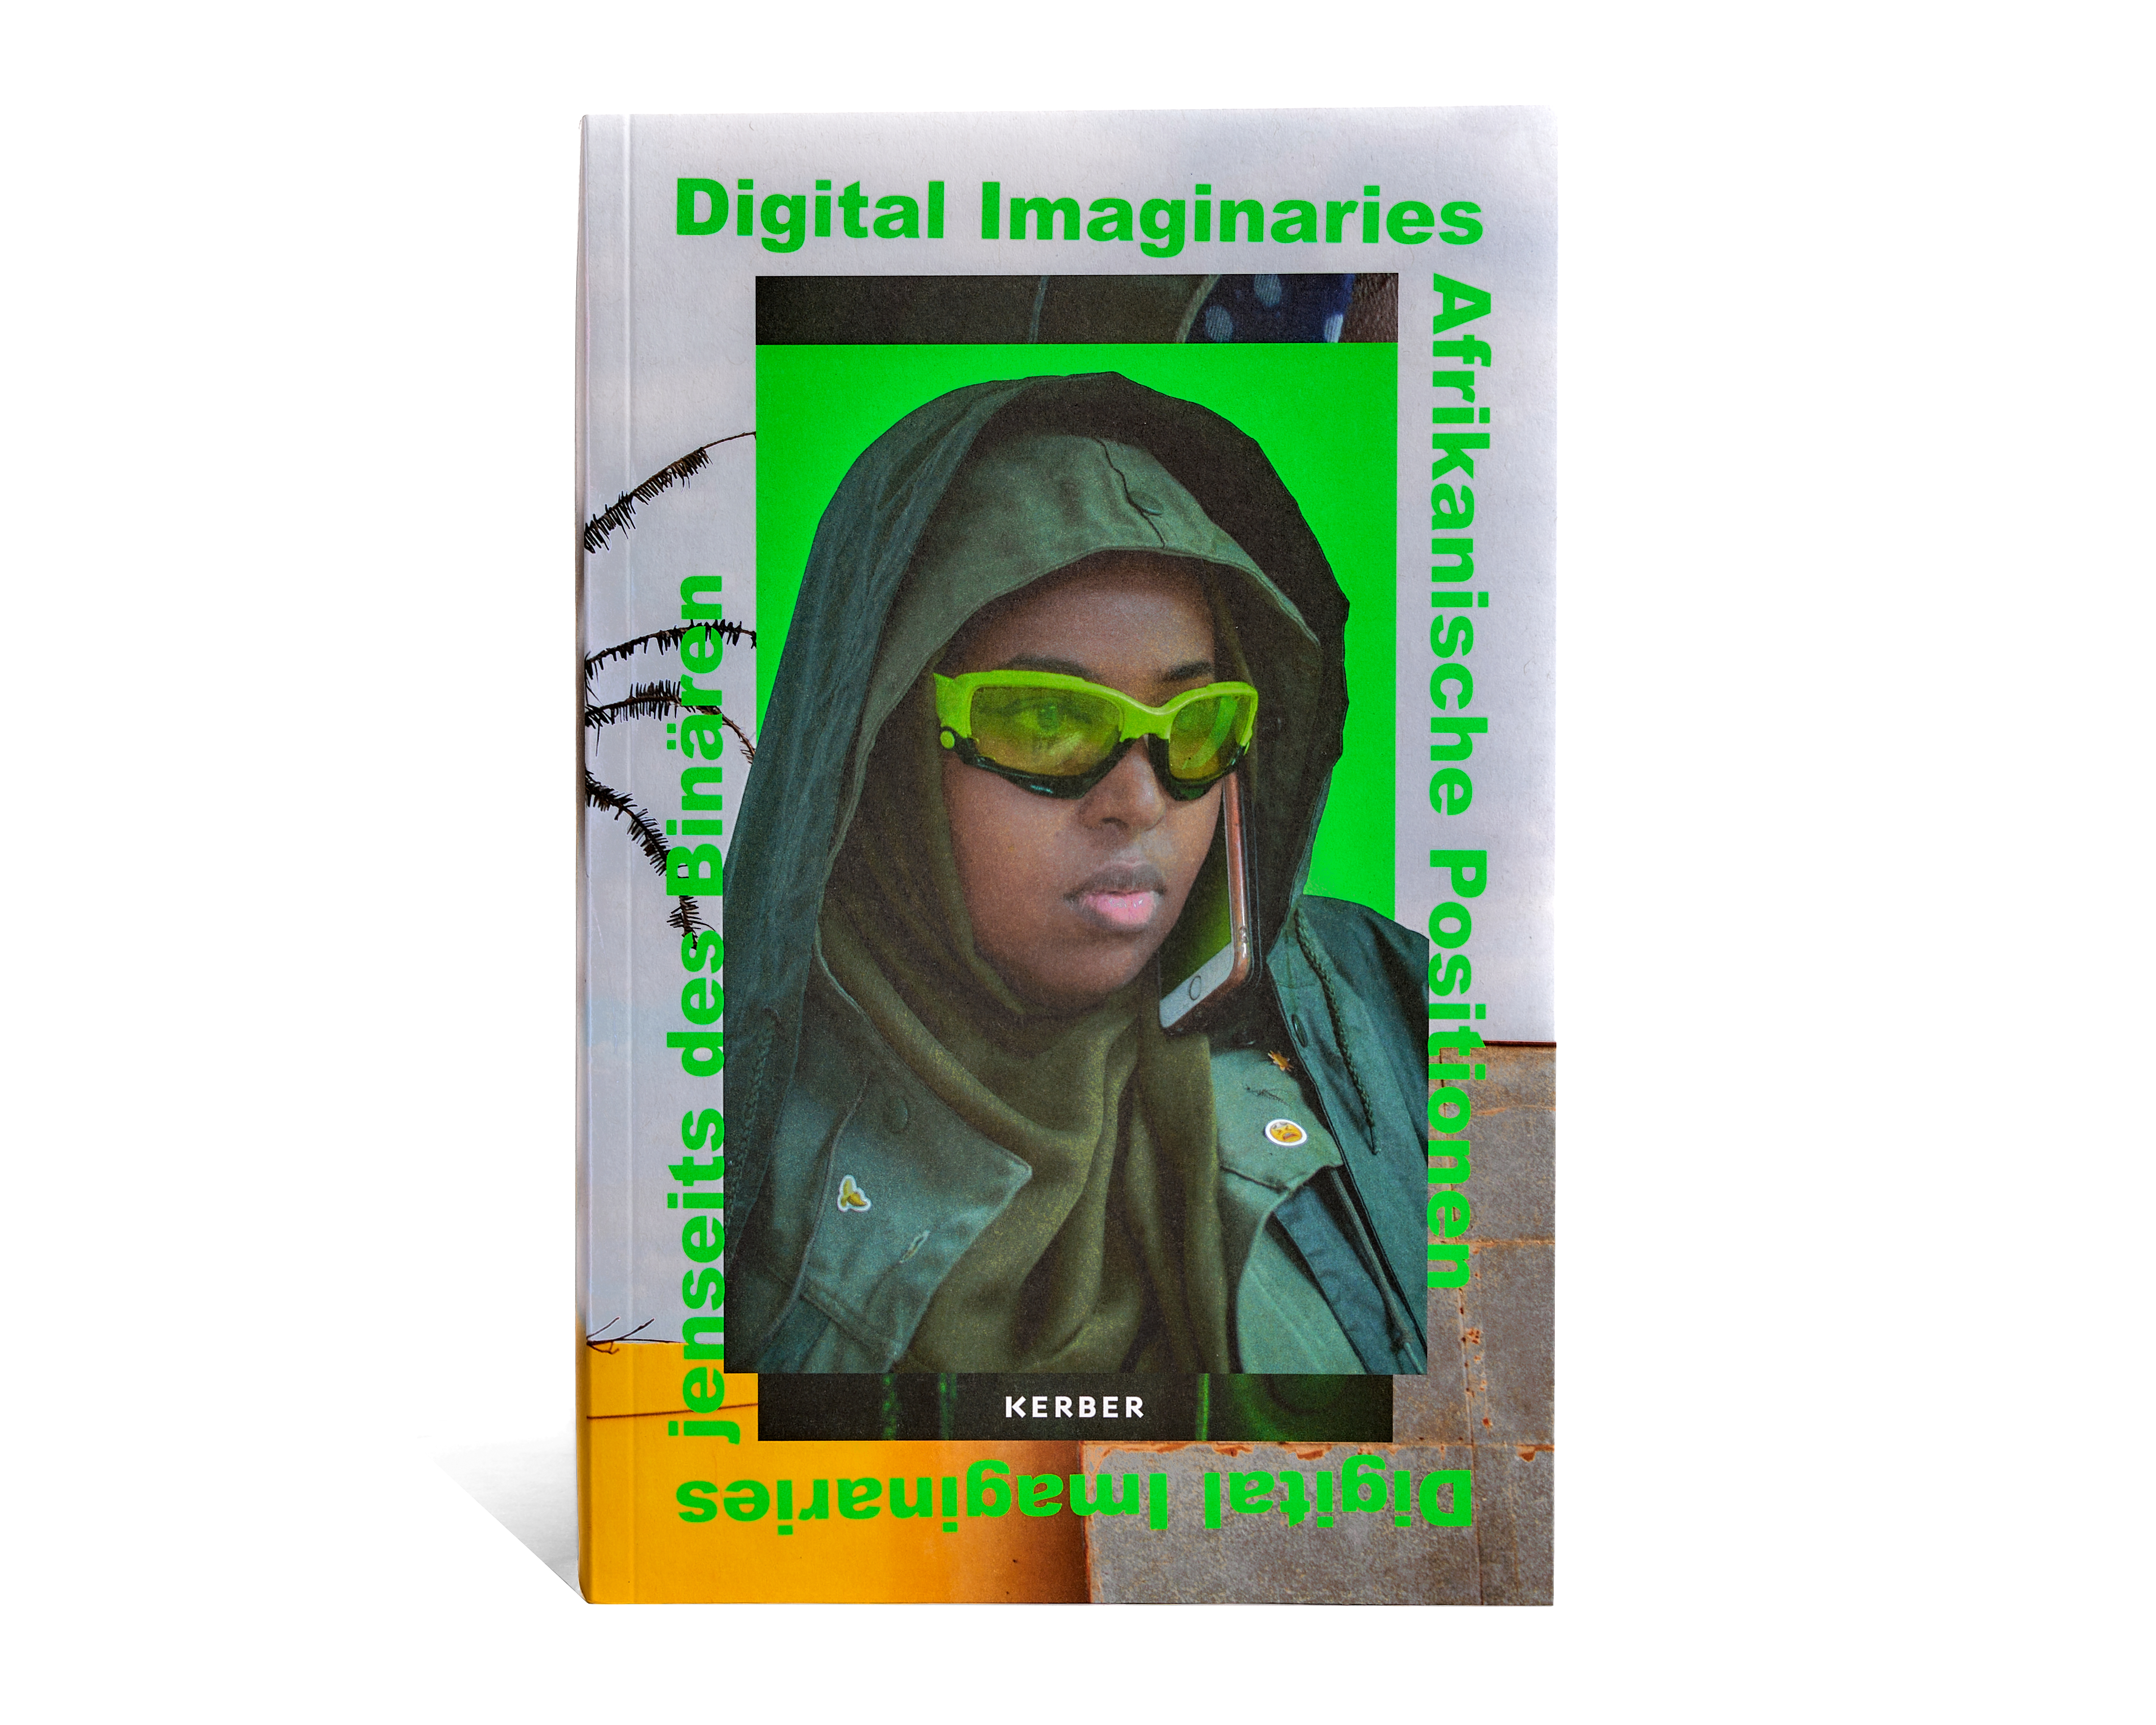 Digital Imaginaries